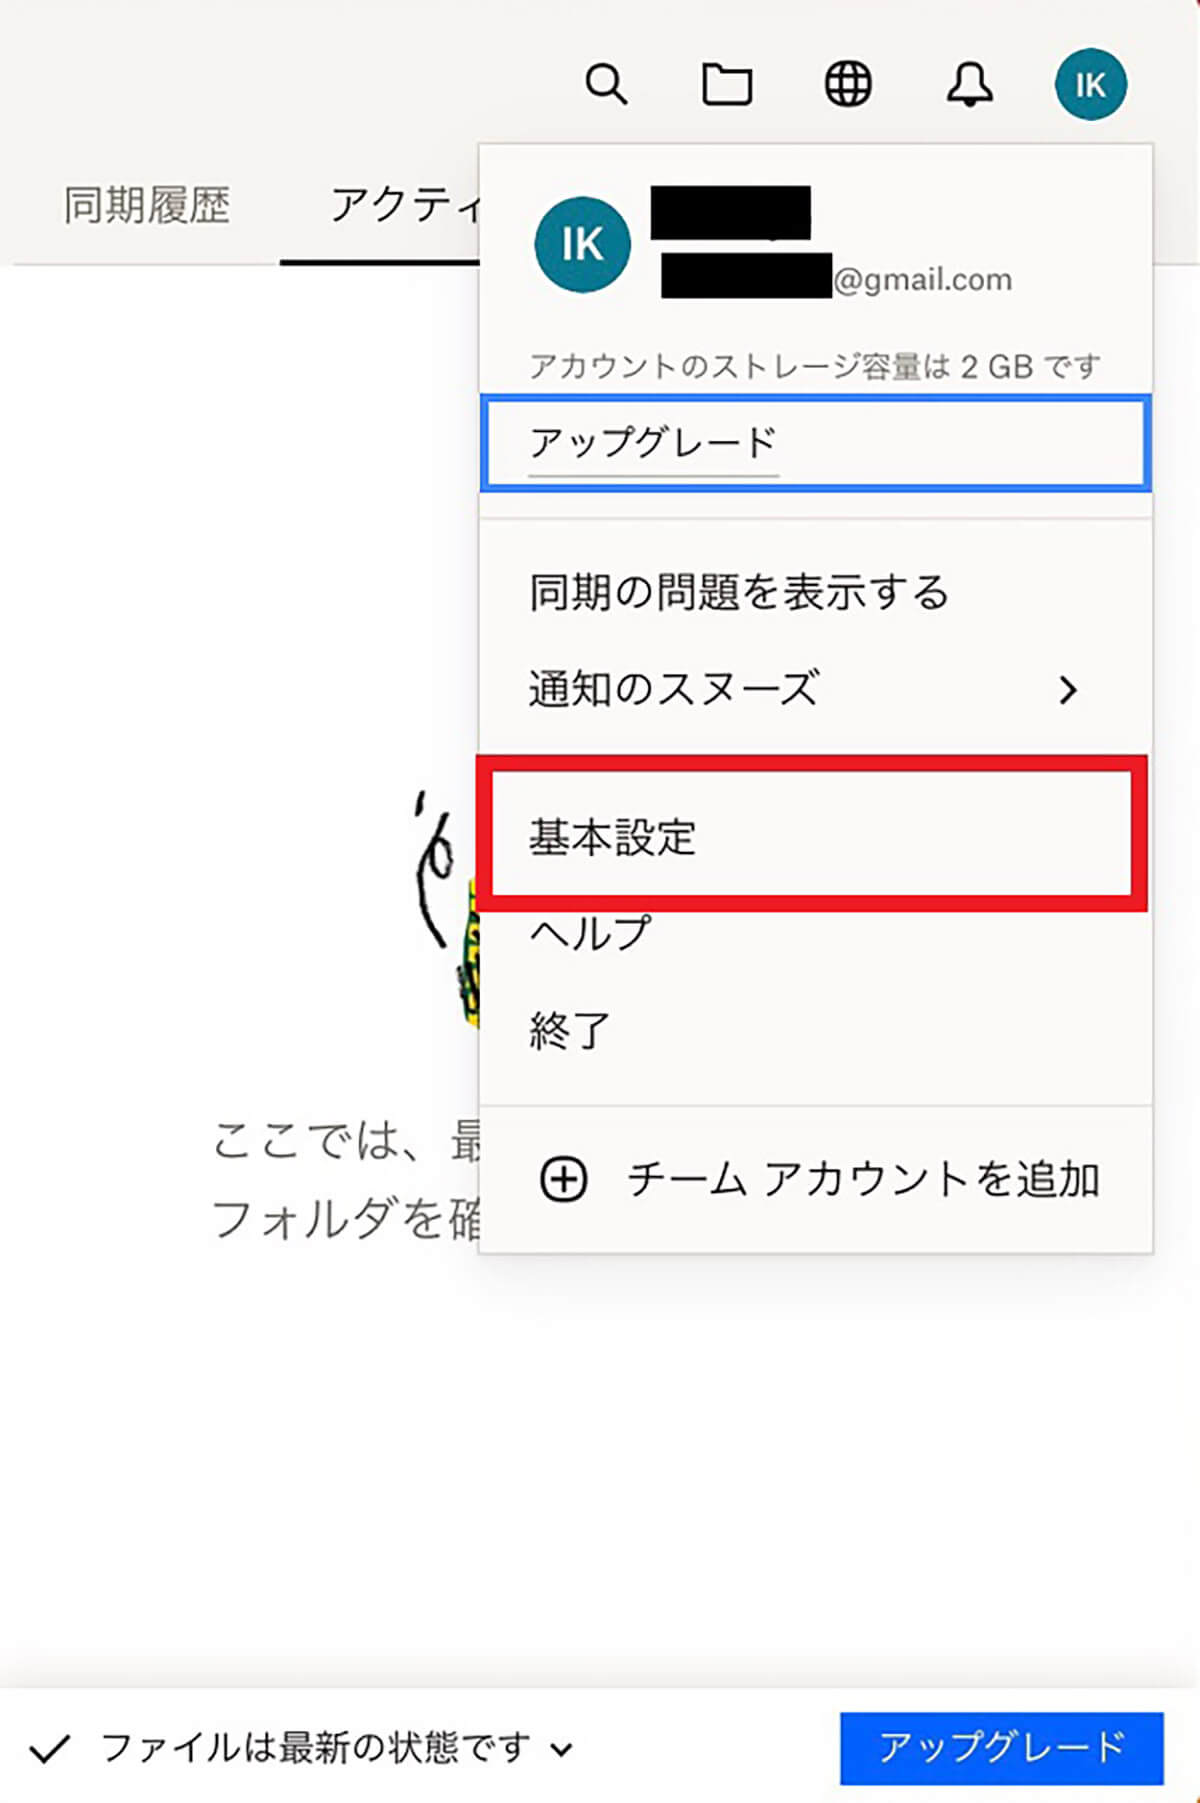 【方法②】外部のオンラインストレージサービス「Dropbox for Mac」利用3